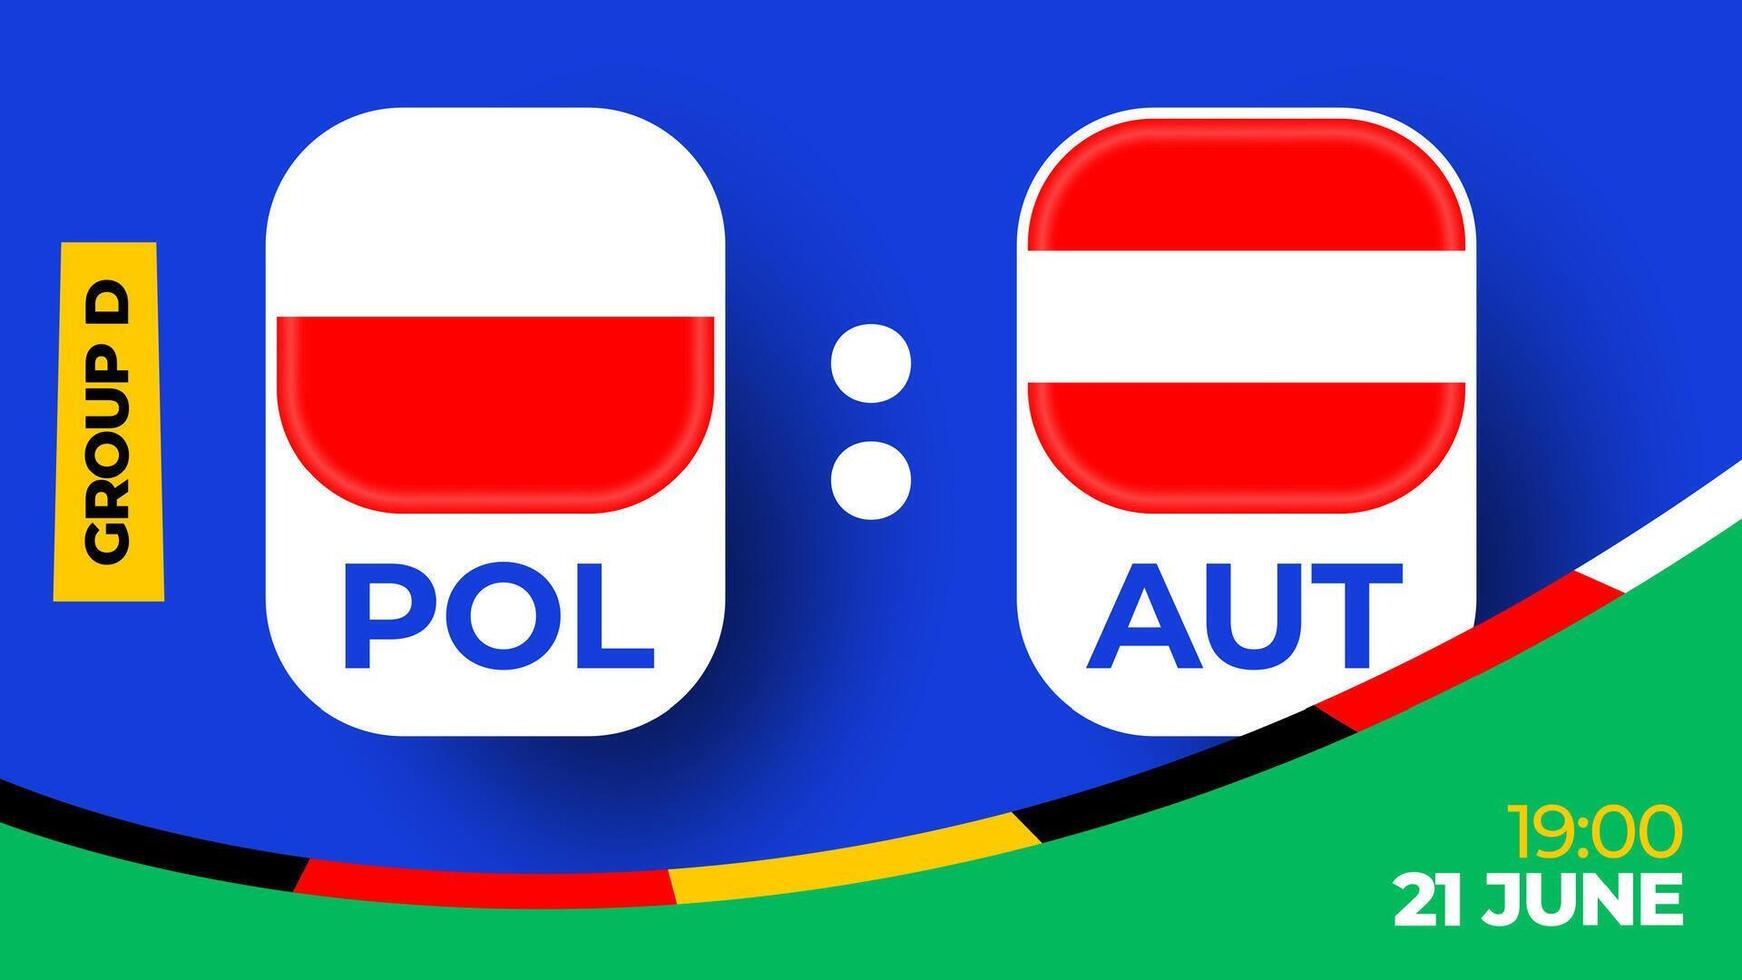 Polen vs Oostenrijk Amerikaans voetbal 2024 bij elkaar passen versus. 2024 groep stadium kampioenschap bij elkaar passen versus teams intro sport achtergrond, kampioenschap wedstrijd vector